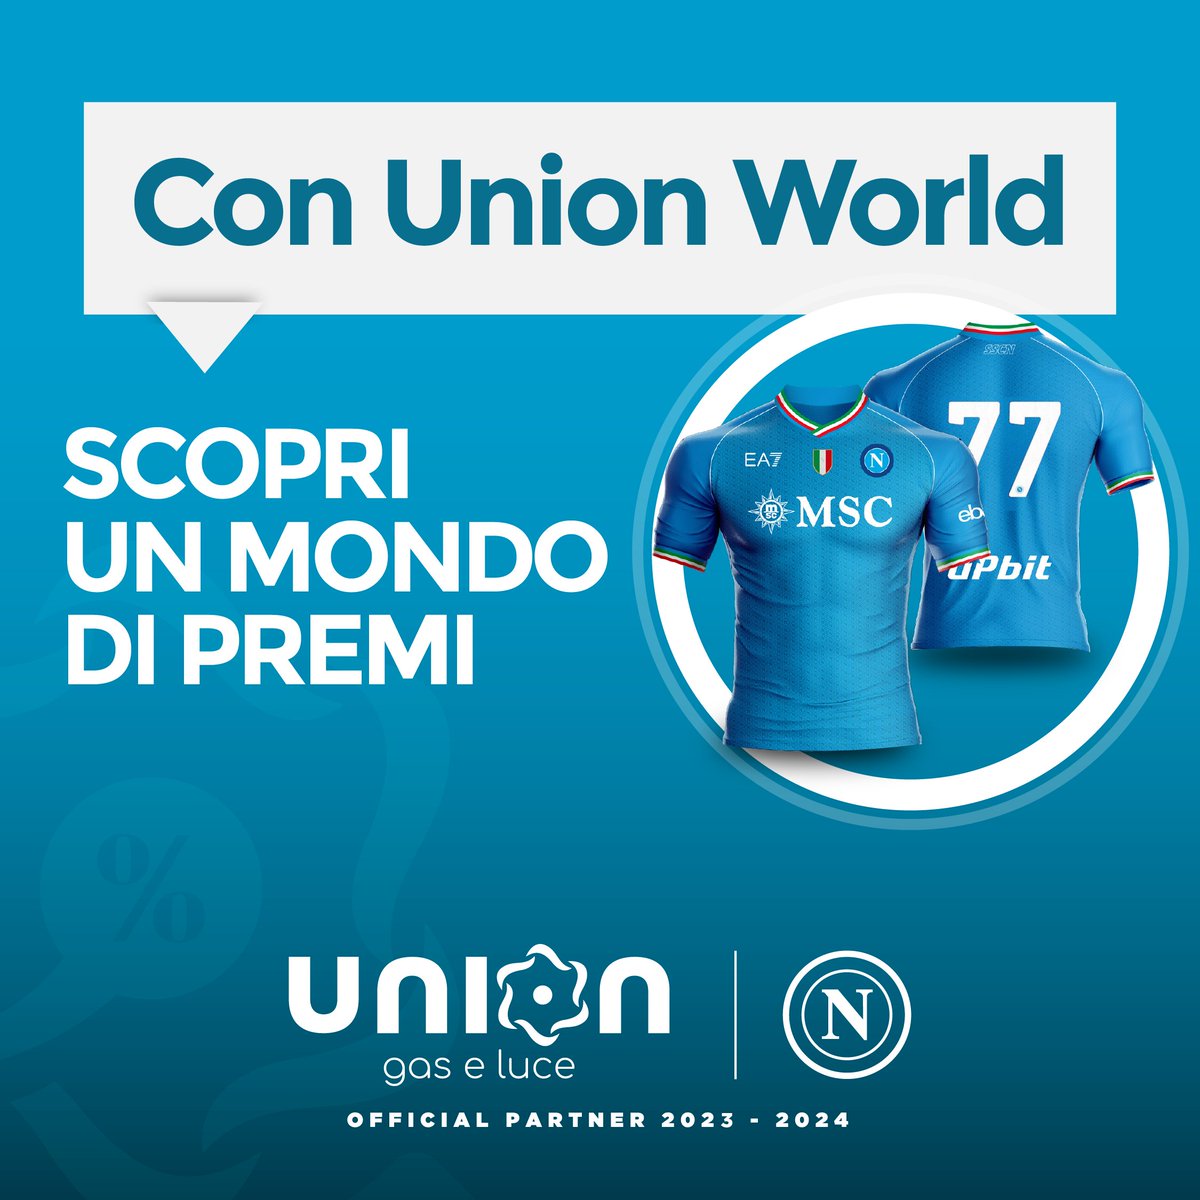 Scopri un Mondo di Premi con il programma fedeltà del nostro partner @Uniongaseluce! Vai su uniongaseluce.it/union-world per scoprire di più su Union World!